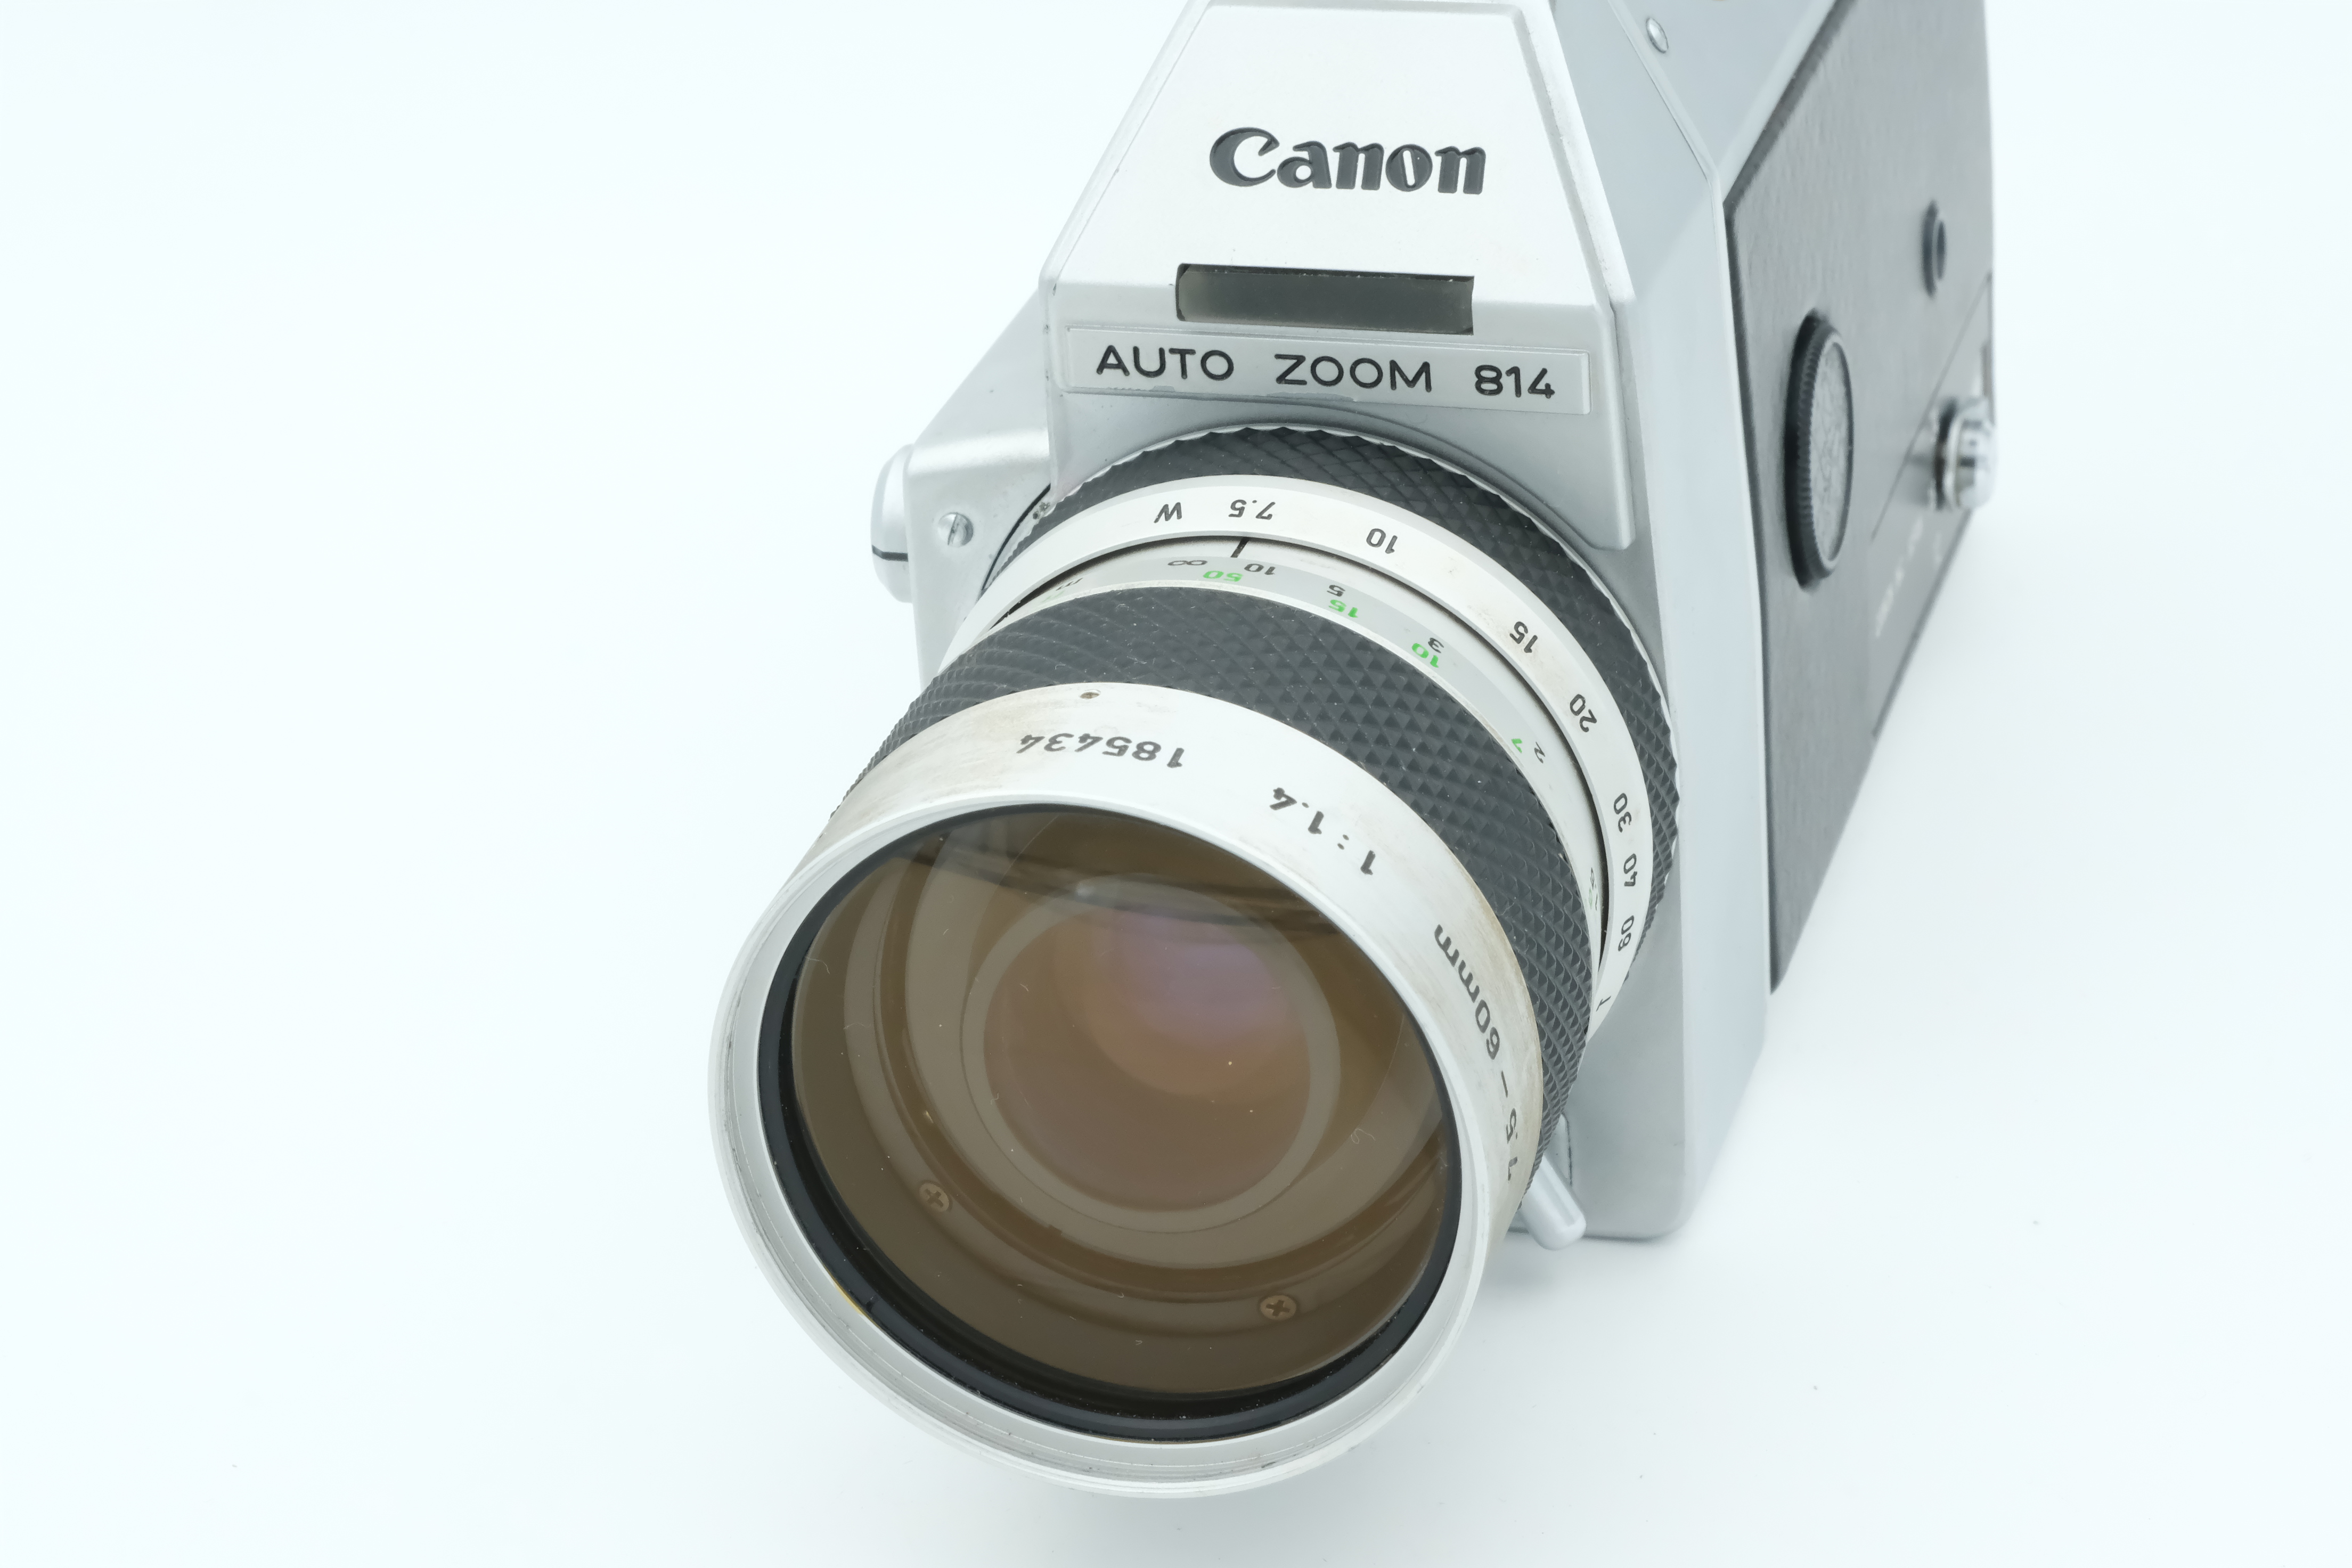 Canon Auto Zoom 814, 7,5-60mm 1,4 Super 8 Bild 02